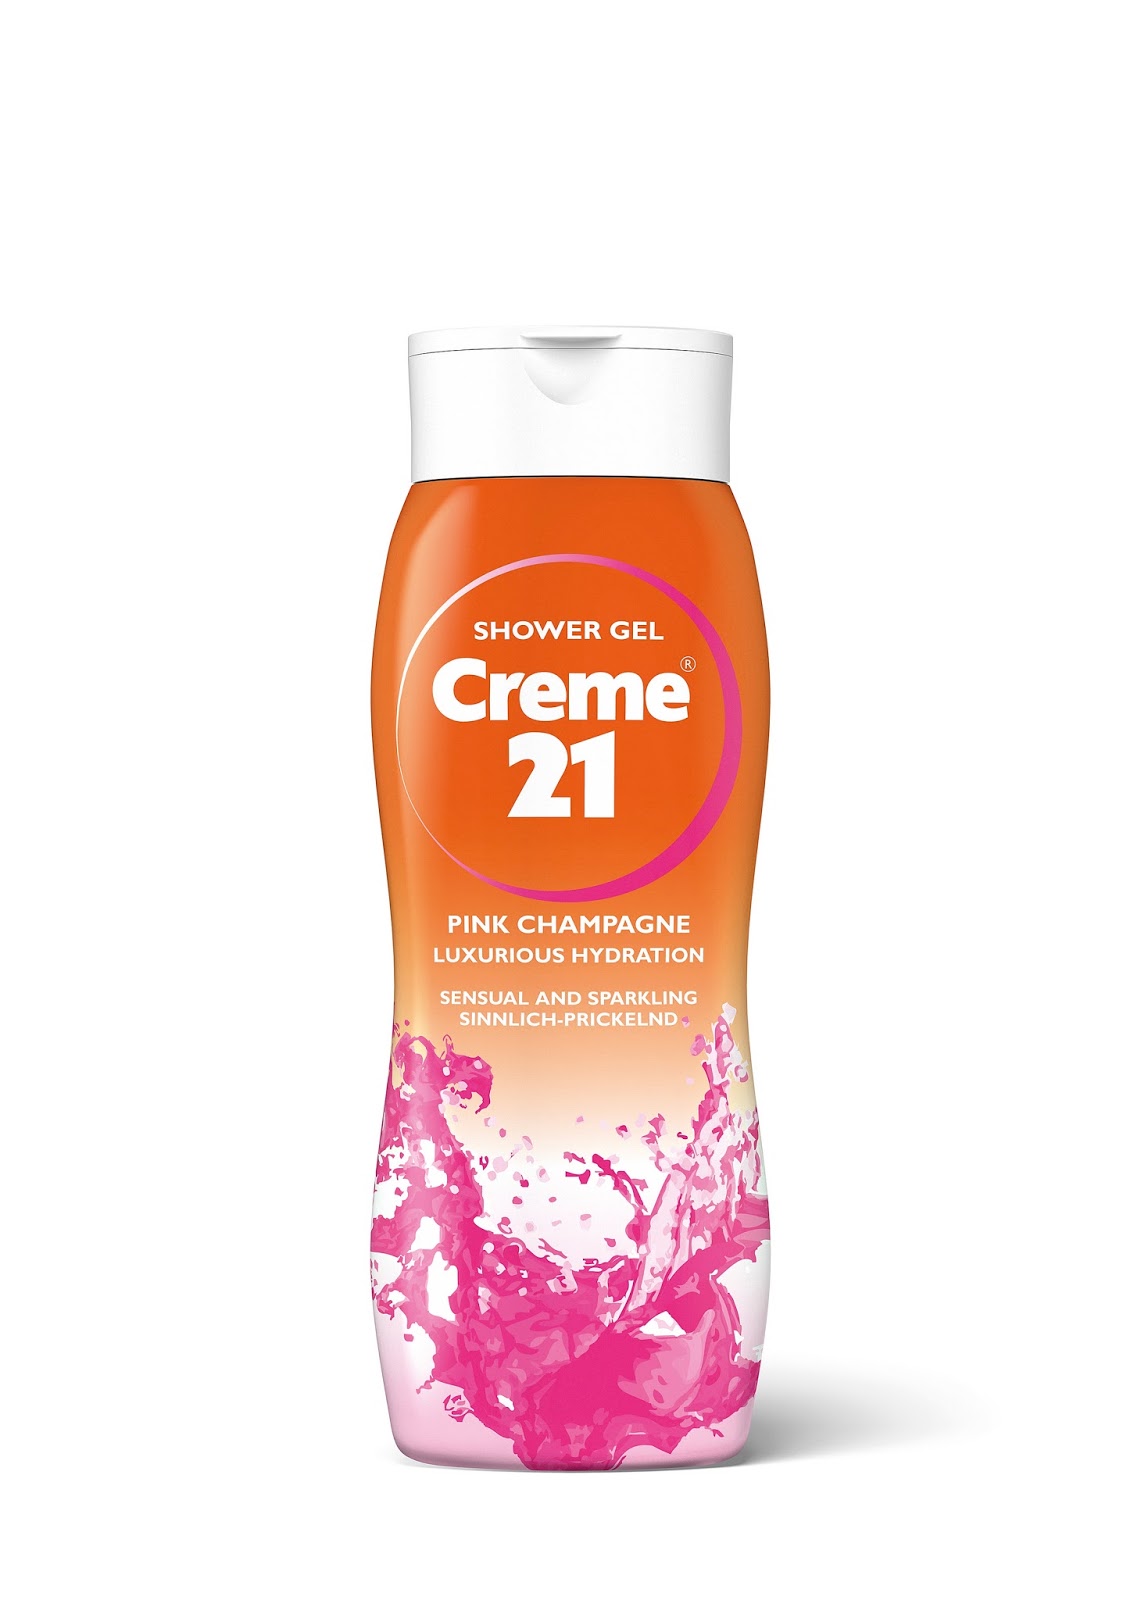 Creme Shower Gel. Гель для душа розовое шампанское. Гель для душа бренды. Creme 21 гель для рук. Перевести gel